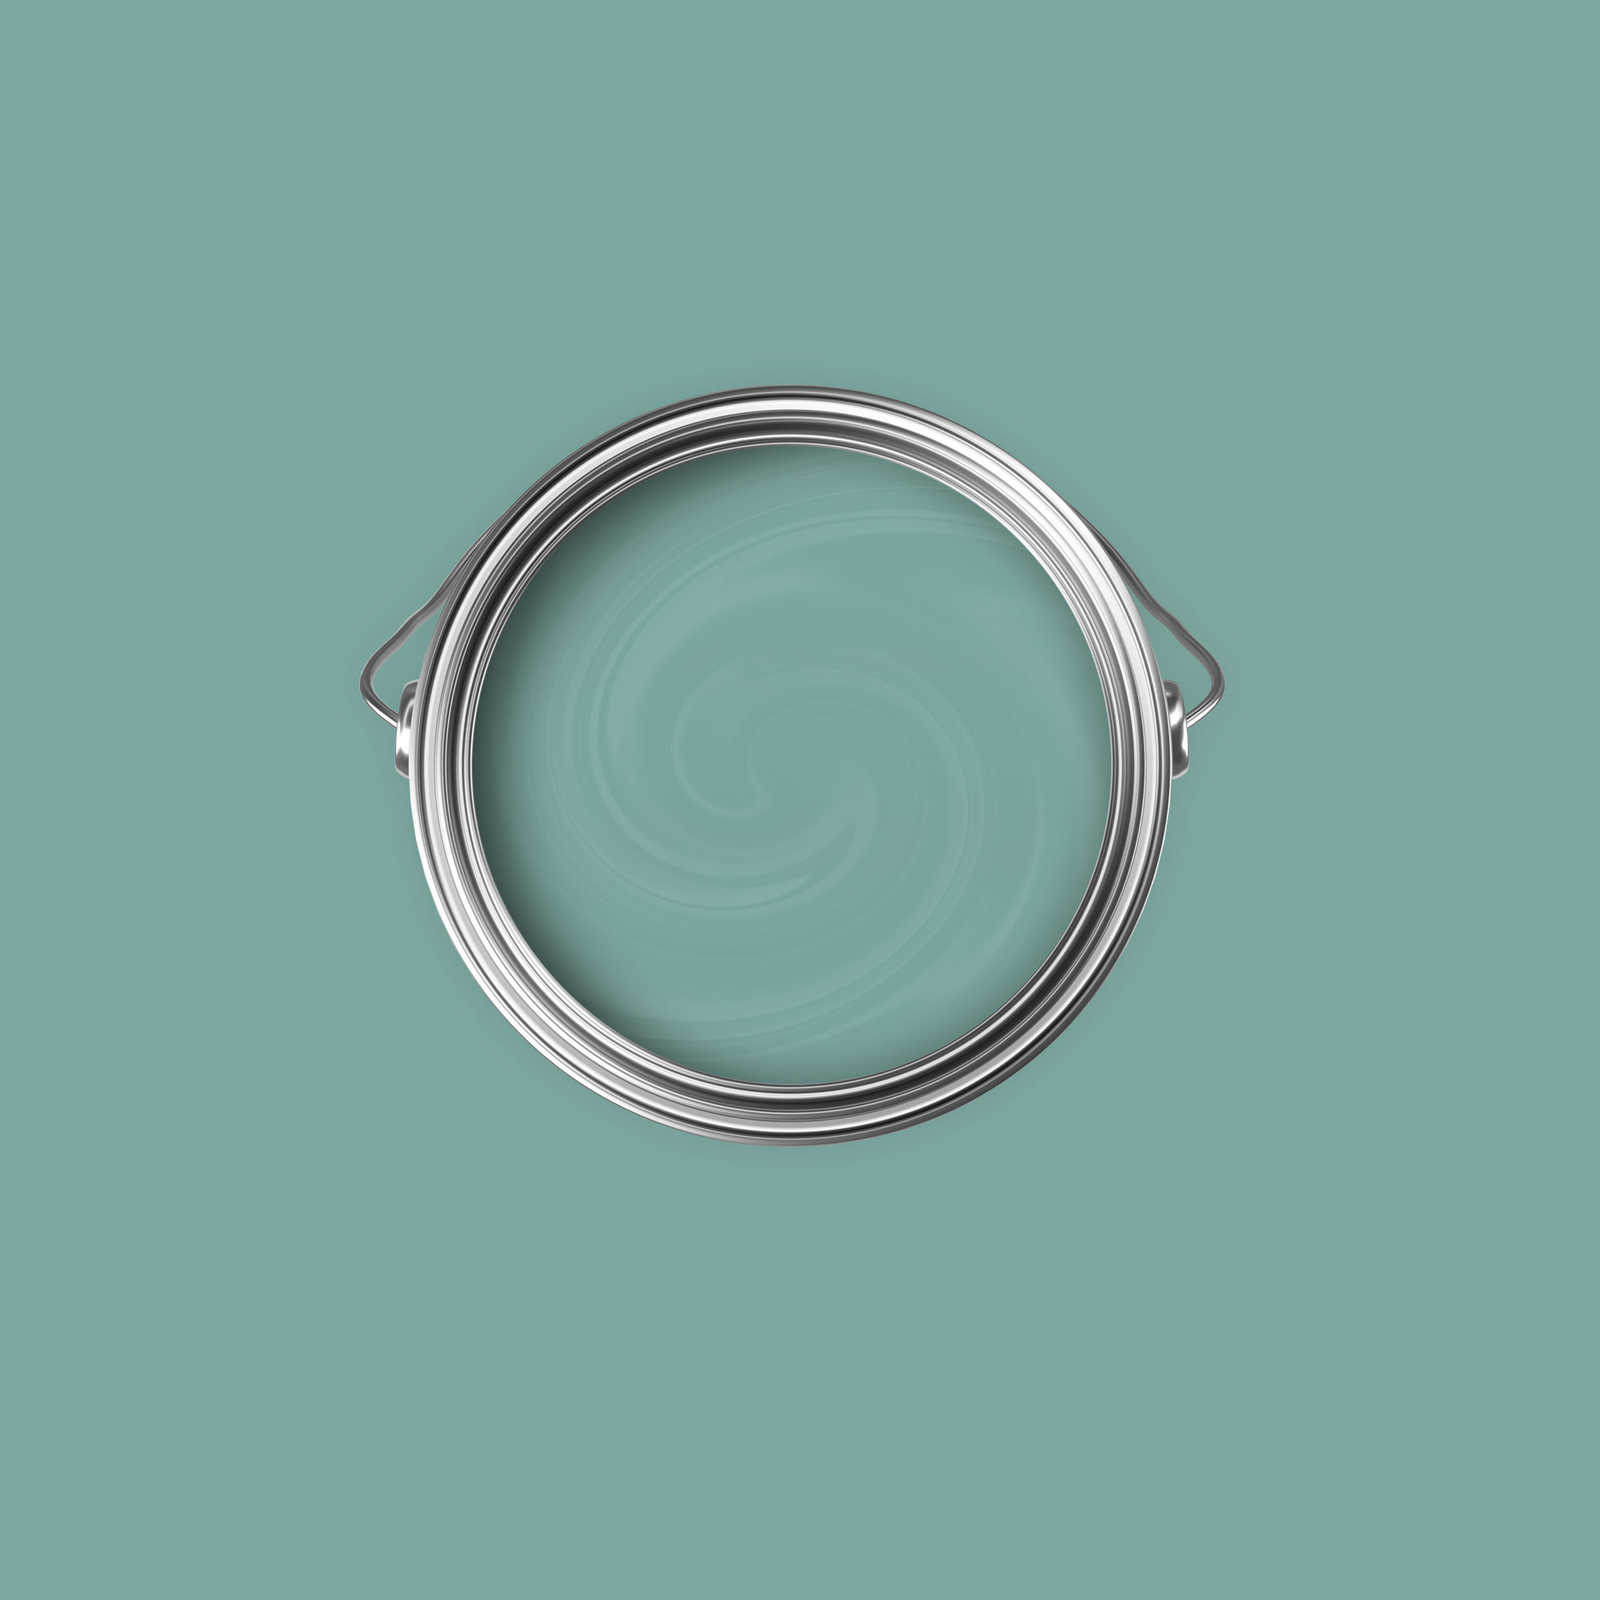             Premium Wandfarbe frisches Salbei »Expressive Emerald« NW409 – 2,5 Liter
        